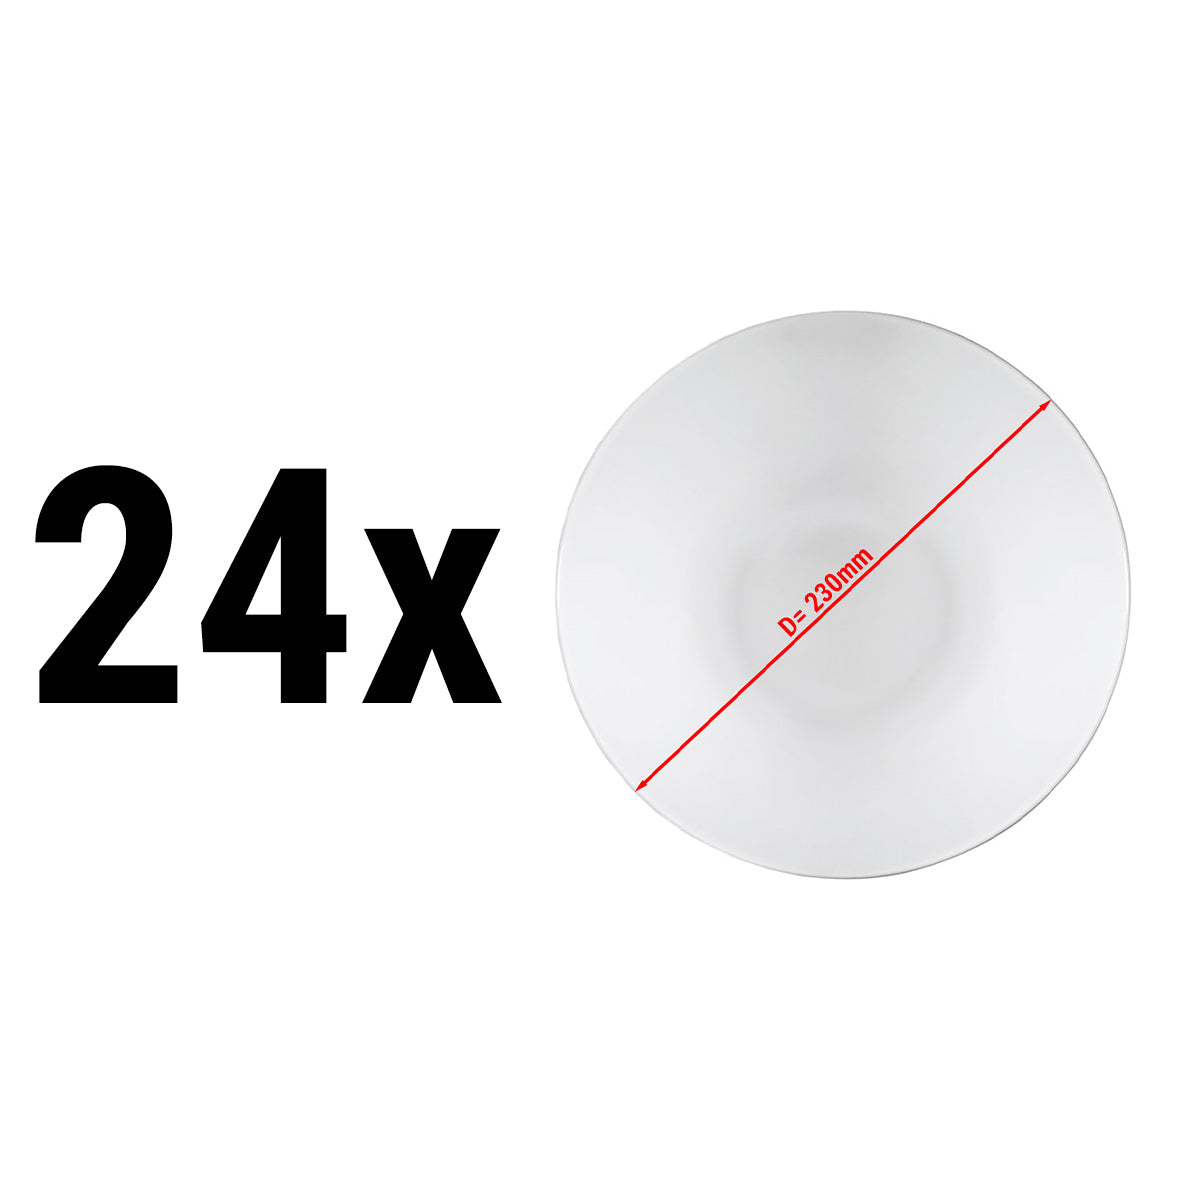 (24 stk.) PERA Hvid - Desser / Salatskål - Ø 23 cm